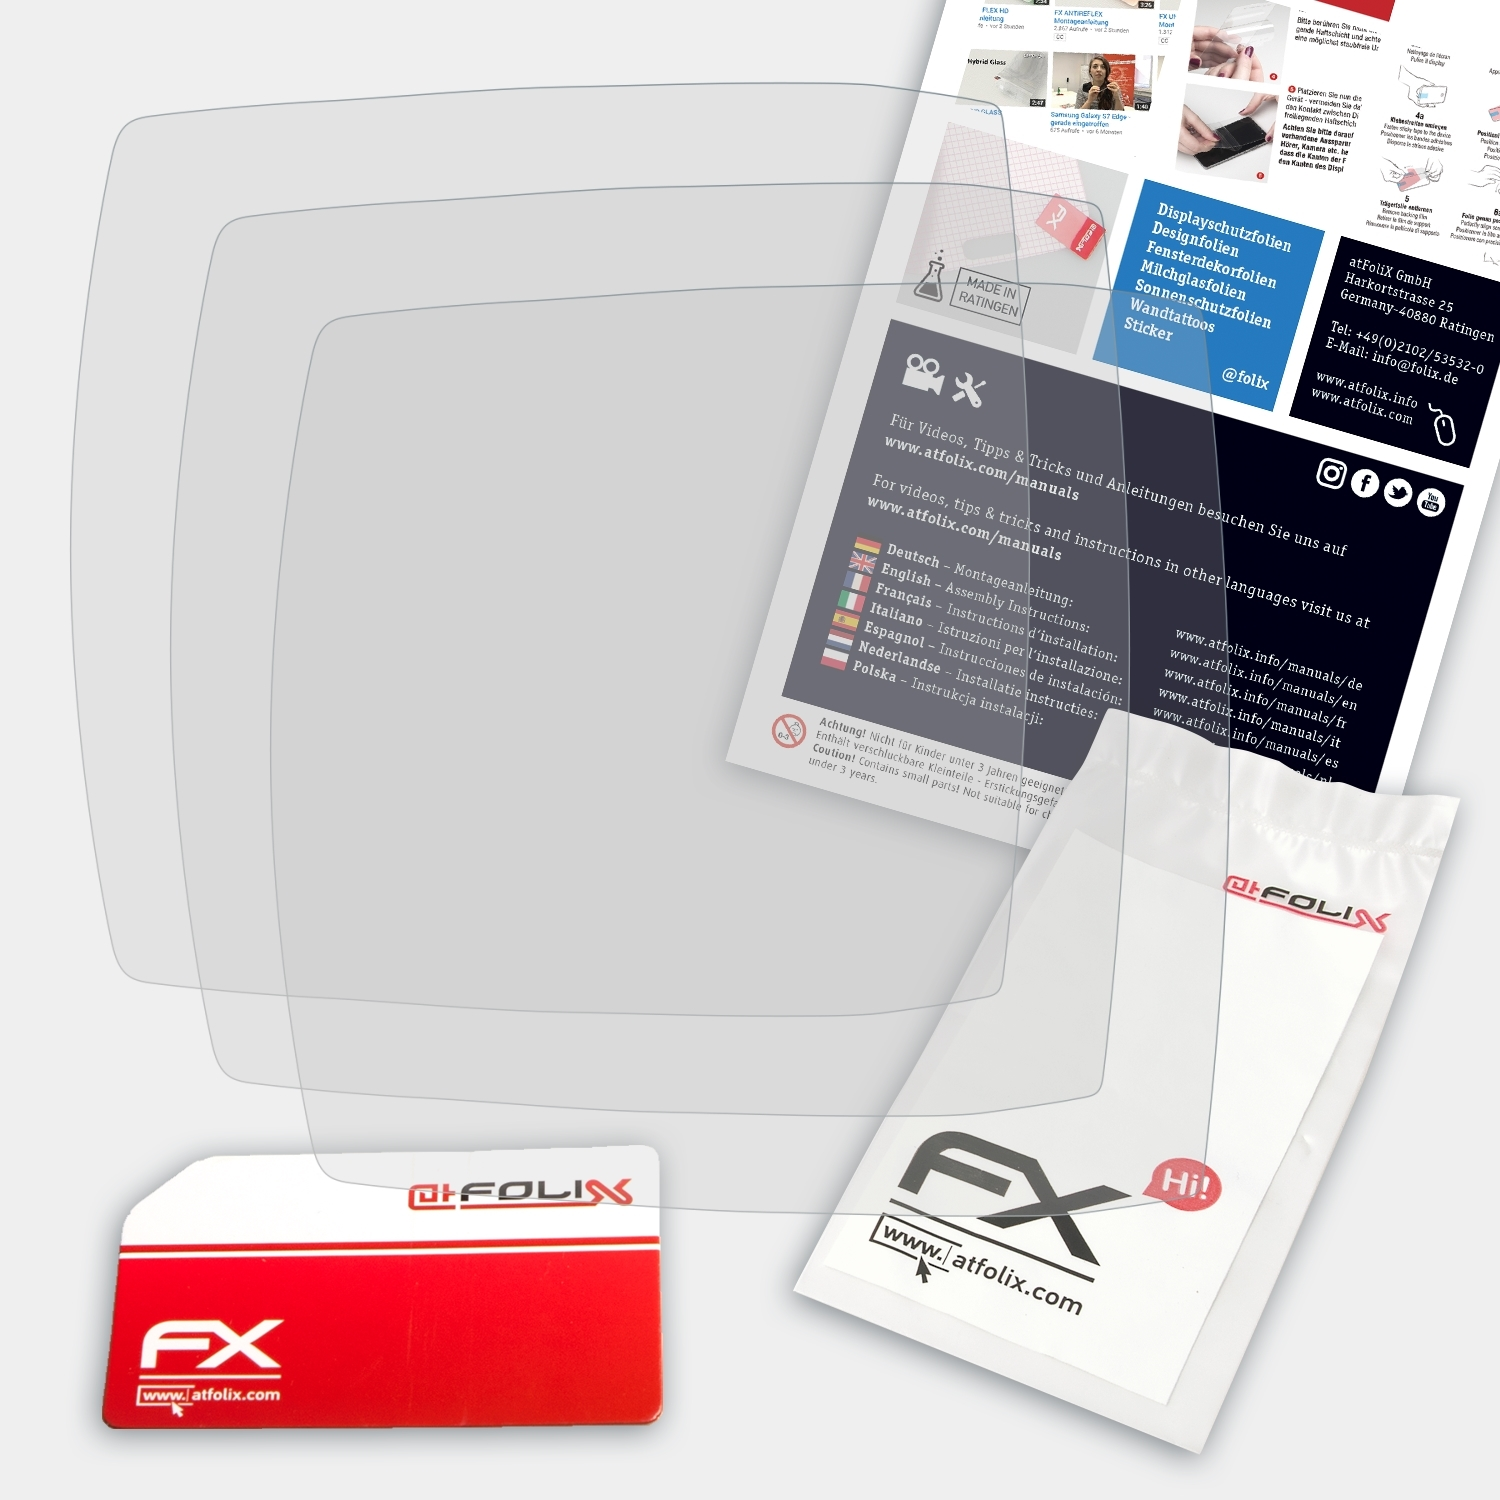 ATFOLIX 3x FX-Antireflex Displayschutz(für Bosch Purion)